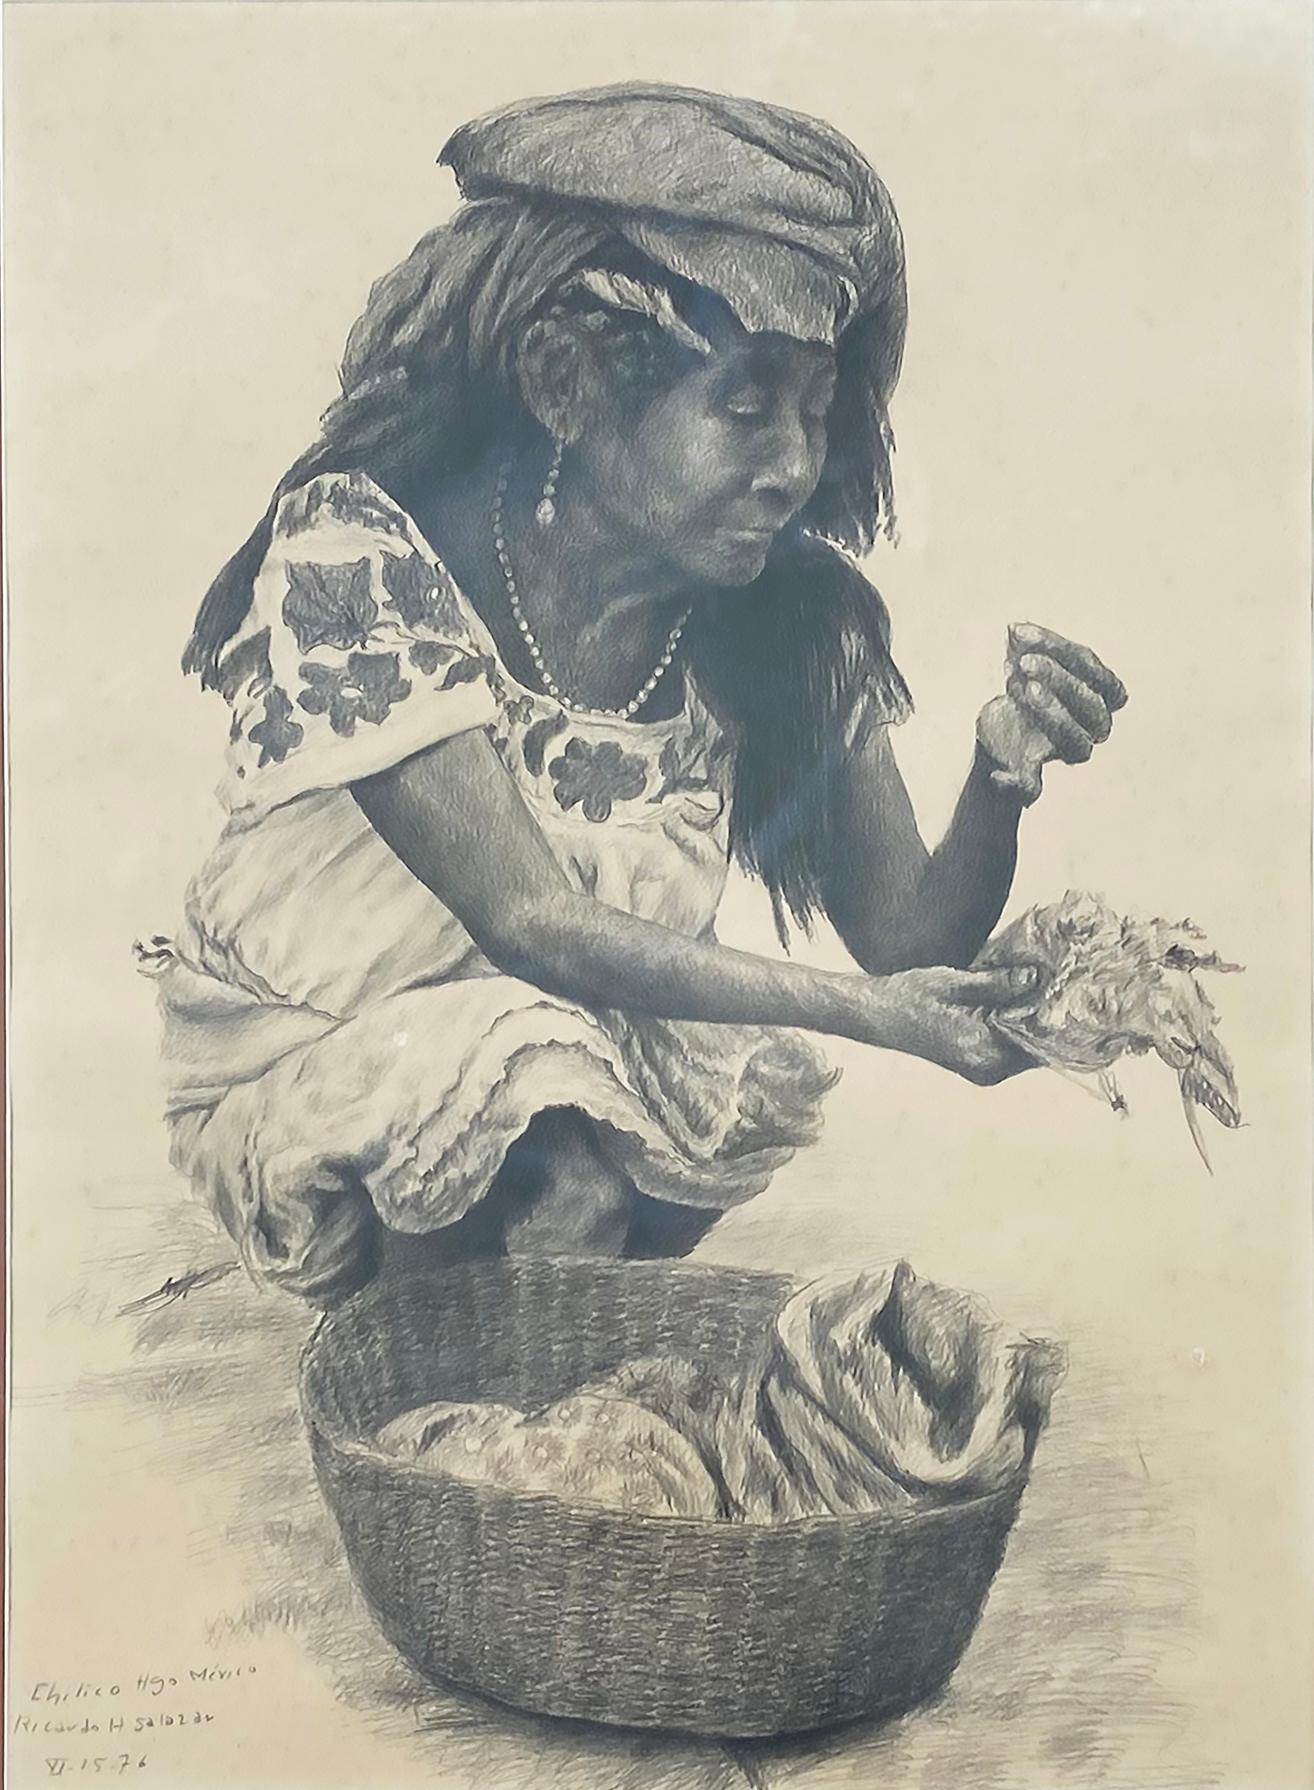 1976 Mexikanische Ricardo H. Salazar Bleistiftzeichnung/Bleistiftzeichnung/Papier, Hidalgo, MX

Zum Verkauf angeboten wird eine komplizierte und meisterhaft gezeichnete realistische Bleistiftzeichnung einer mexikanischen Frau in der Stadt Chilimico,